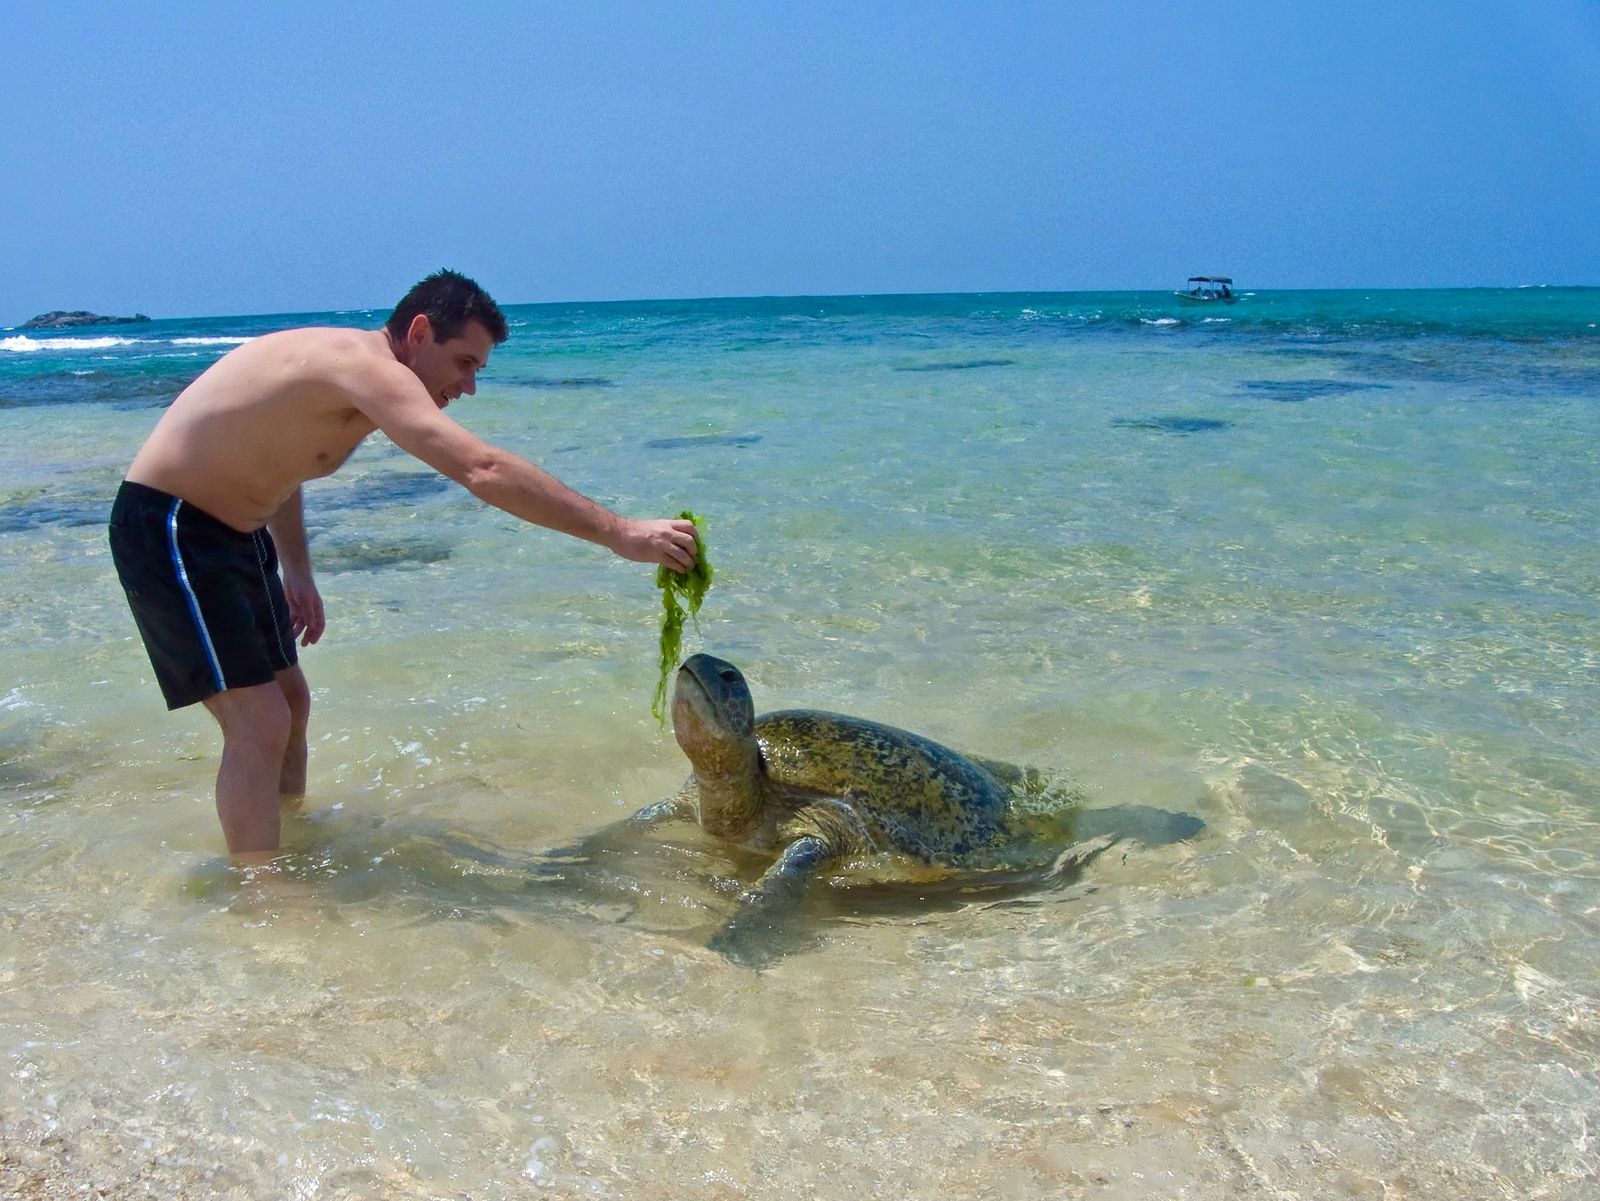 Хикадува шри. Пляж Хиккадува Шри Ланка. Пляж Шри Ланки Хикадува. Пляж Хиккадува Шри Ланка черепахи. Хиккадува пляж с черепахами.